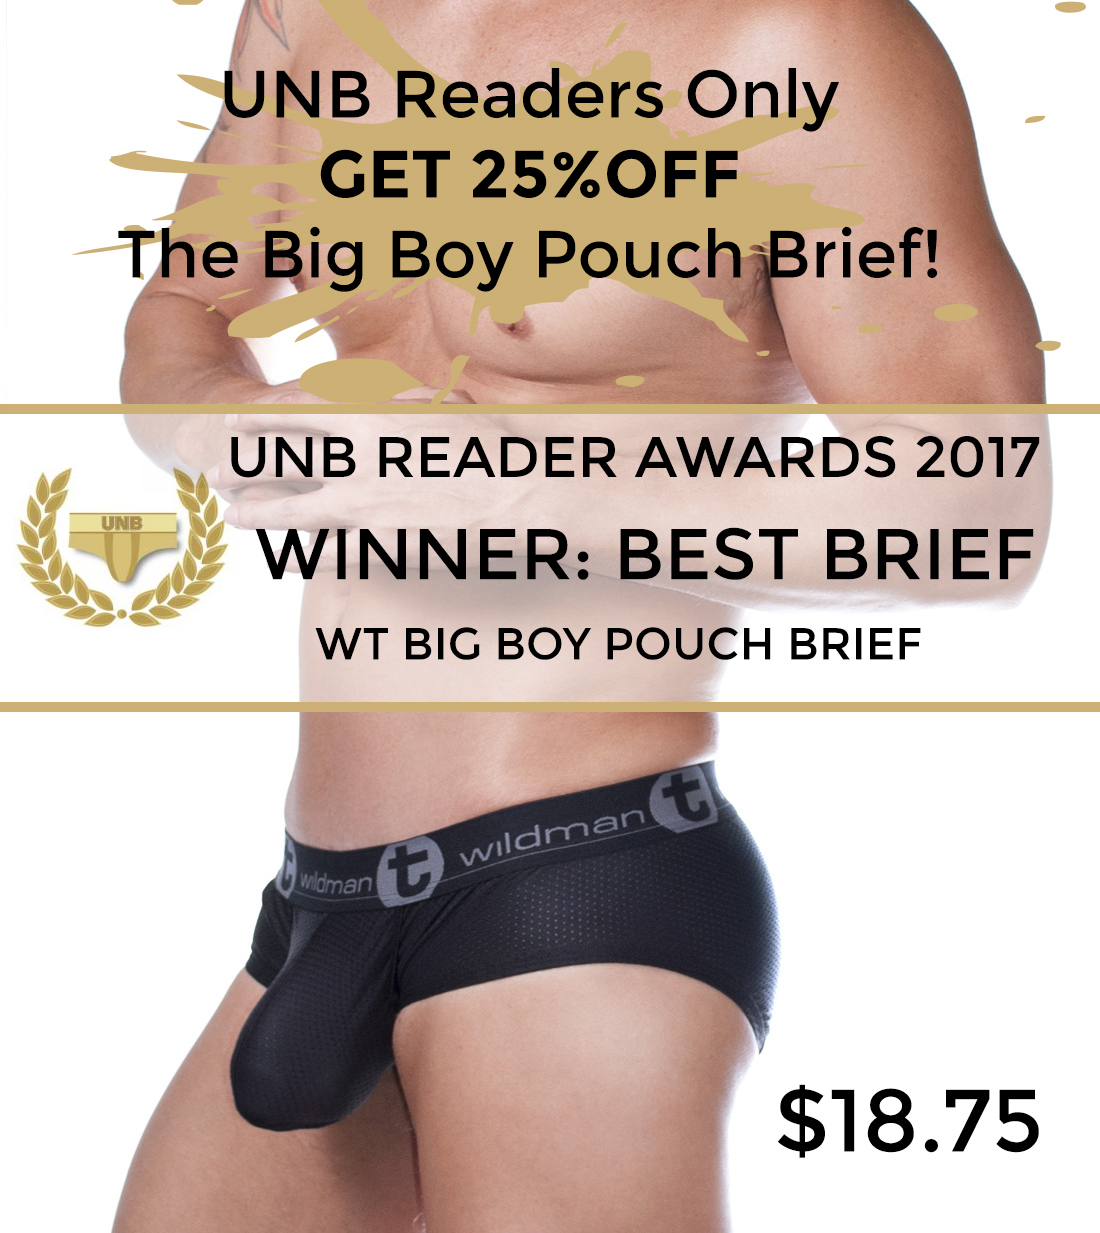 https://underwearnewsbriefs.com/wp-content/uploads/2017/02/1.jpg